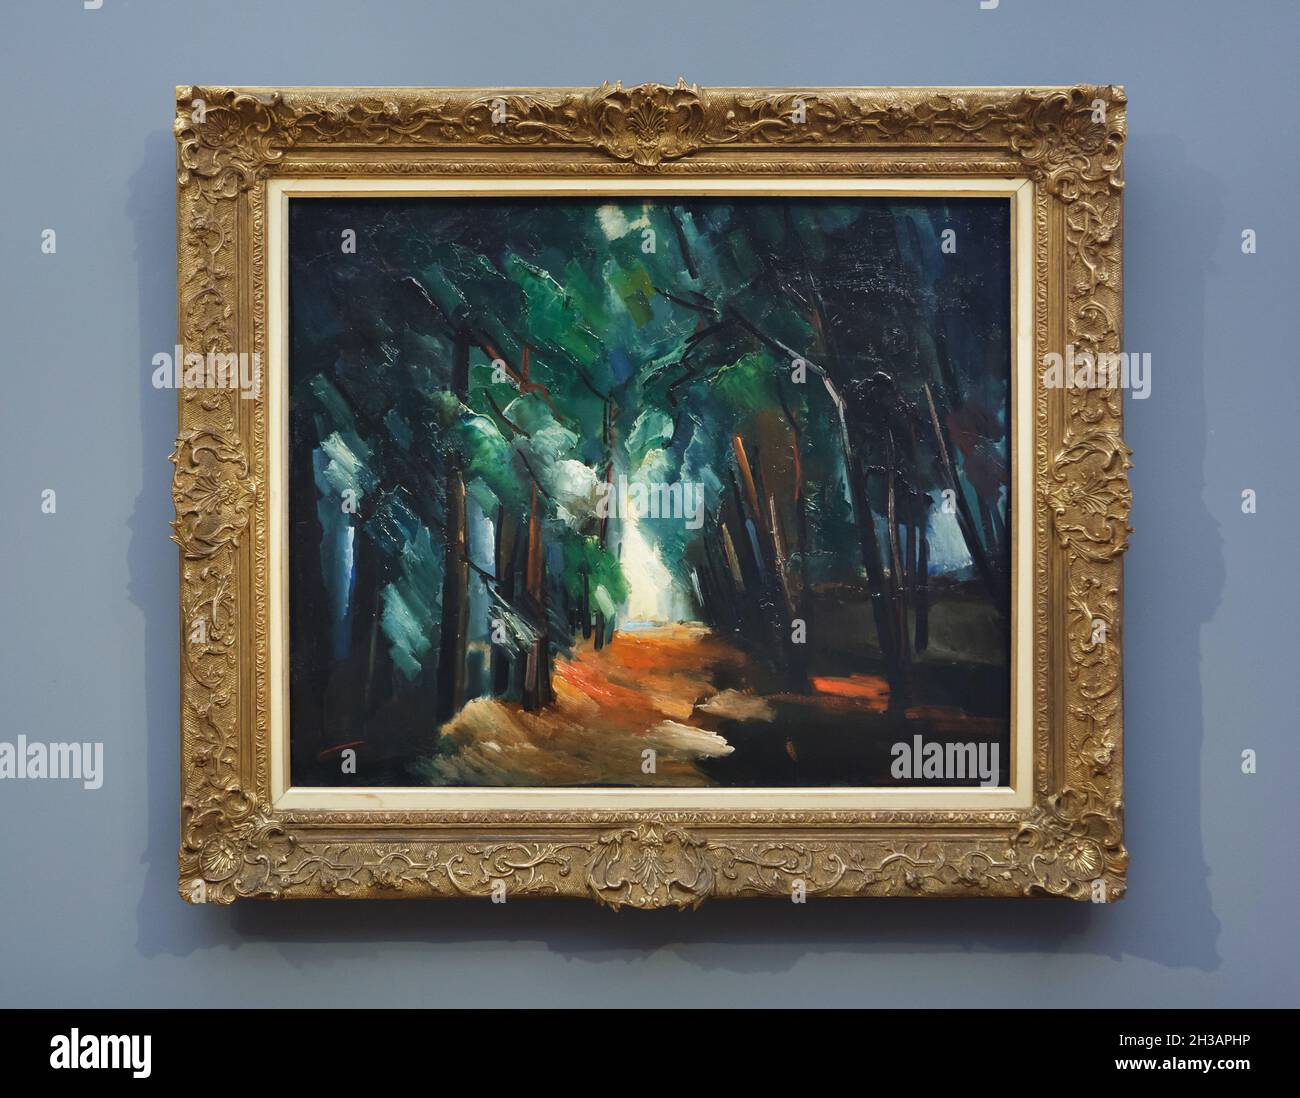 Peinture 'Forêt' du peintre français post-impressionniste Maurice de Vlaminck (1914-1918) exposée au Musée Barberini de Potsdam, Allemagne. Banque D'Images